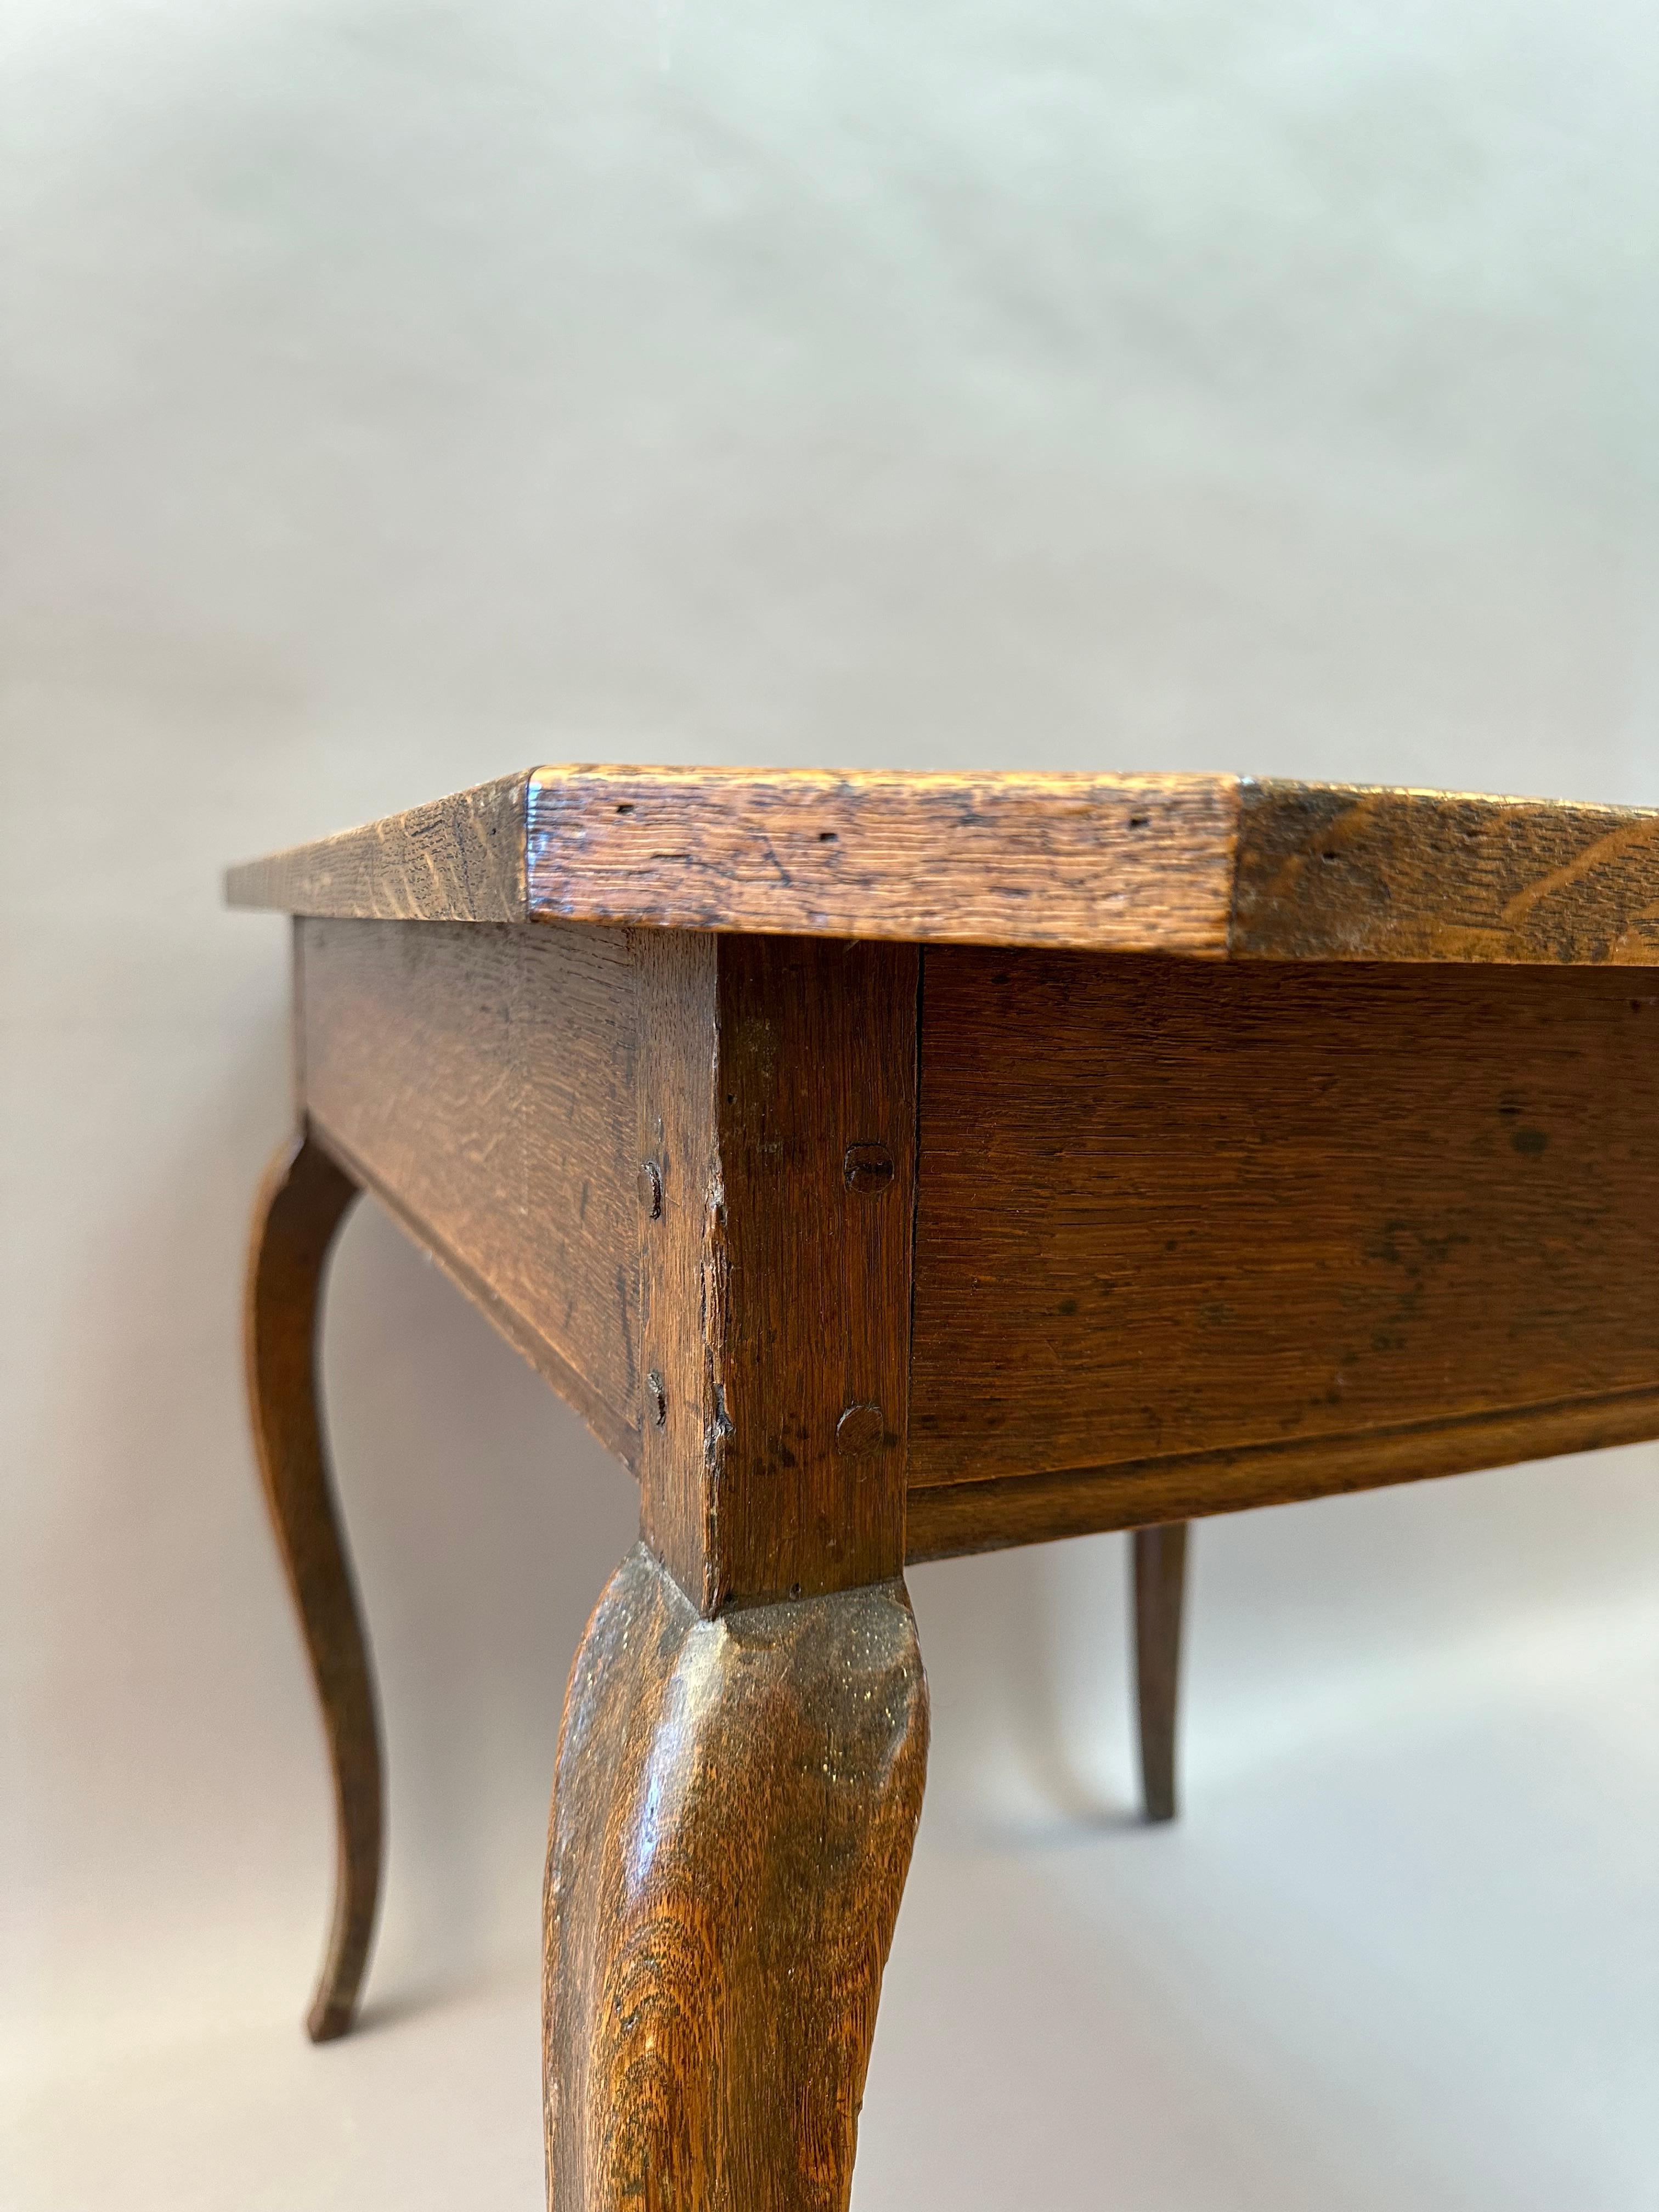 Ein hochwertiger französischer Spieltisch aus dem 18. Jahrhundert. Aus reich gefärbtem Eichenholz mit fein geformten Cabriole-Beinen und geprägter Lederplatte.  Hergestellt in der Provence, um 1780.